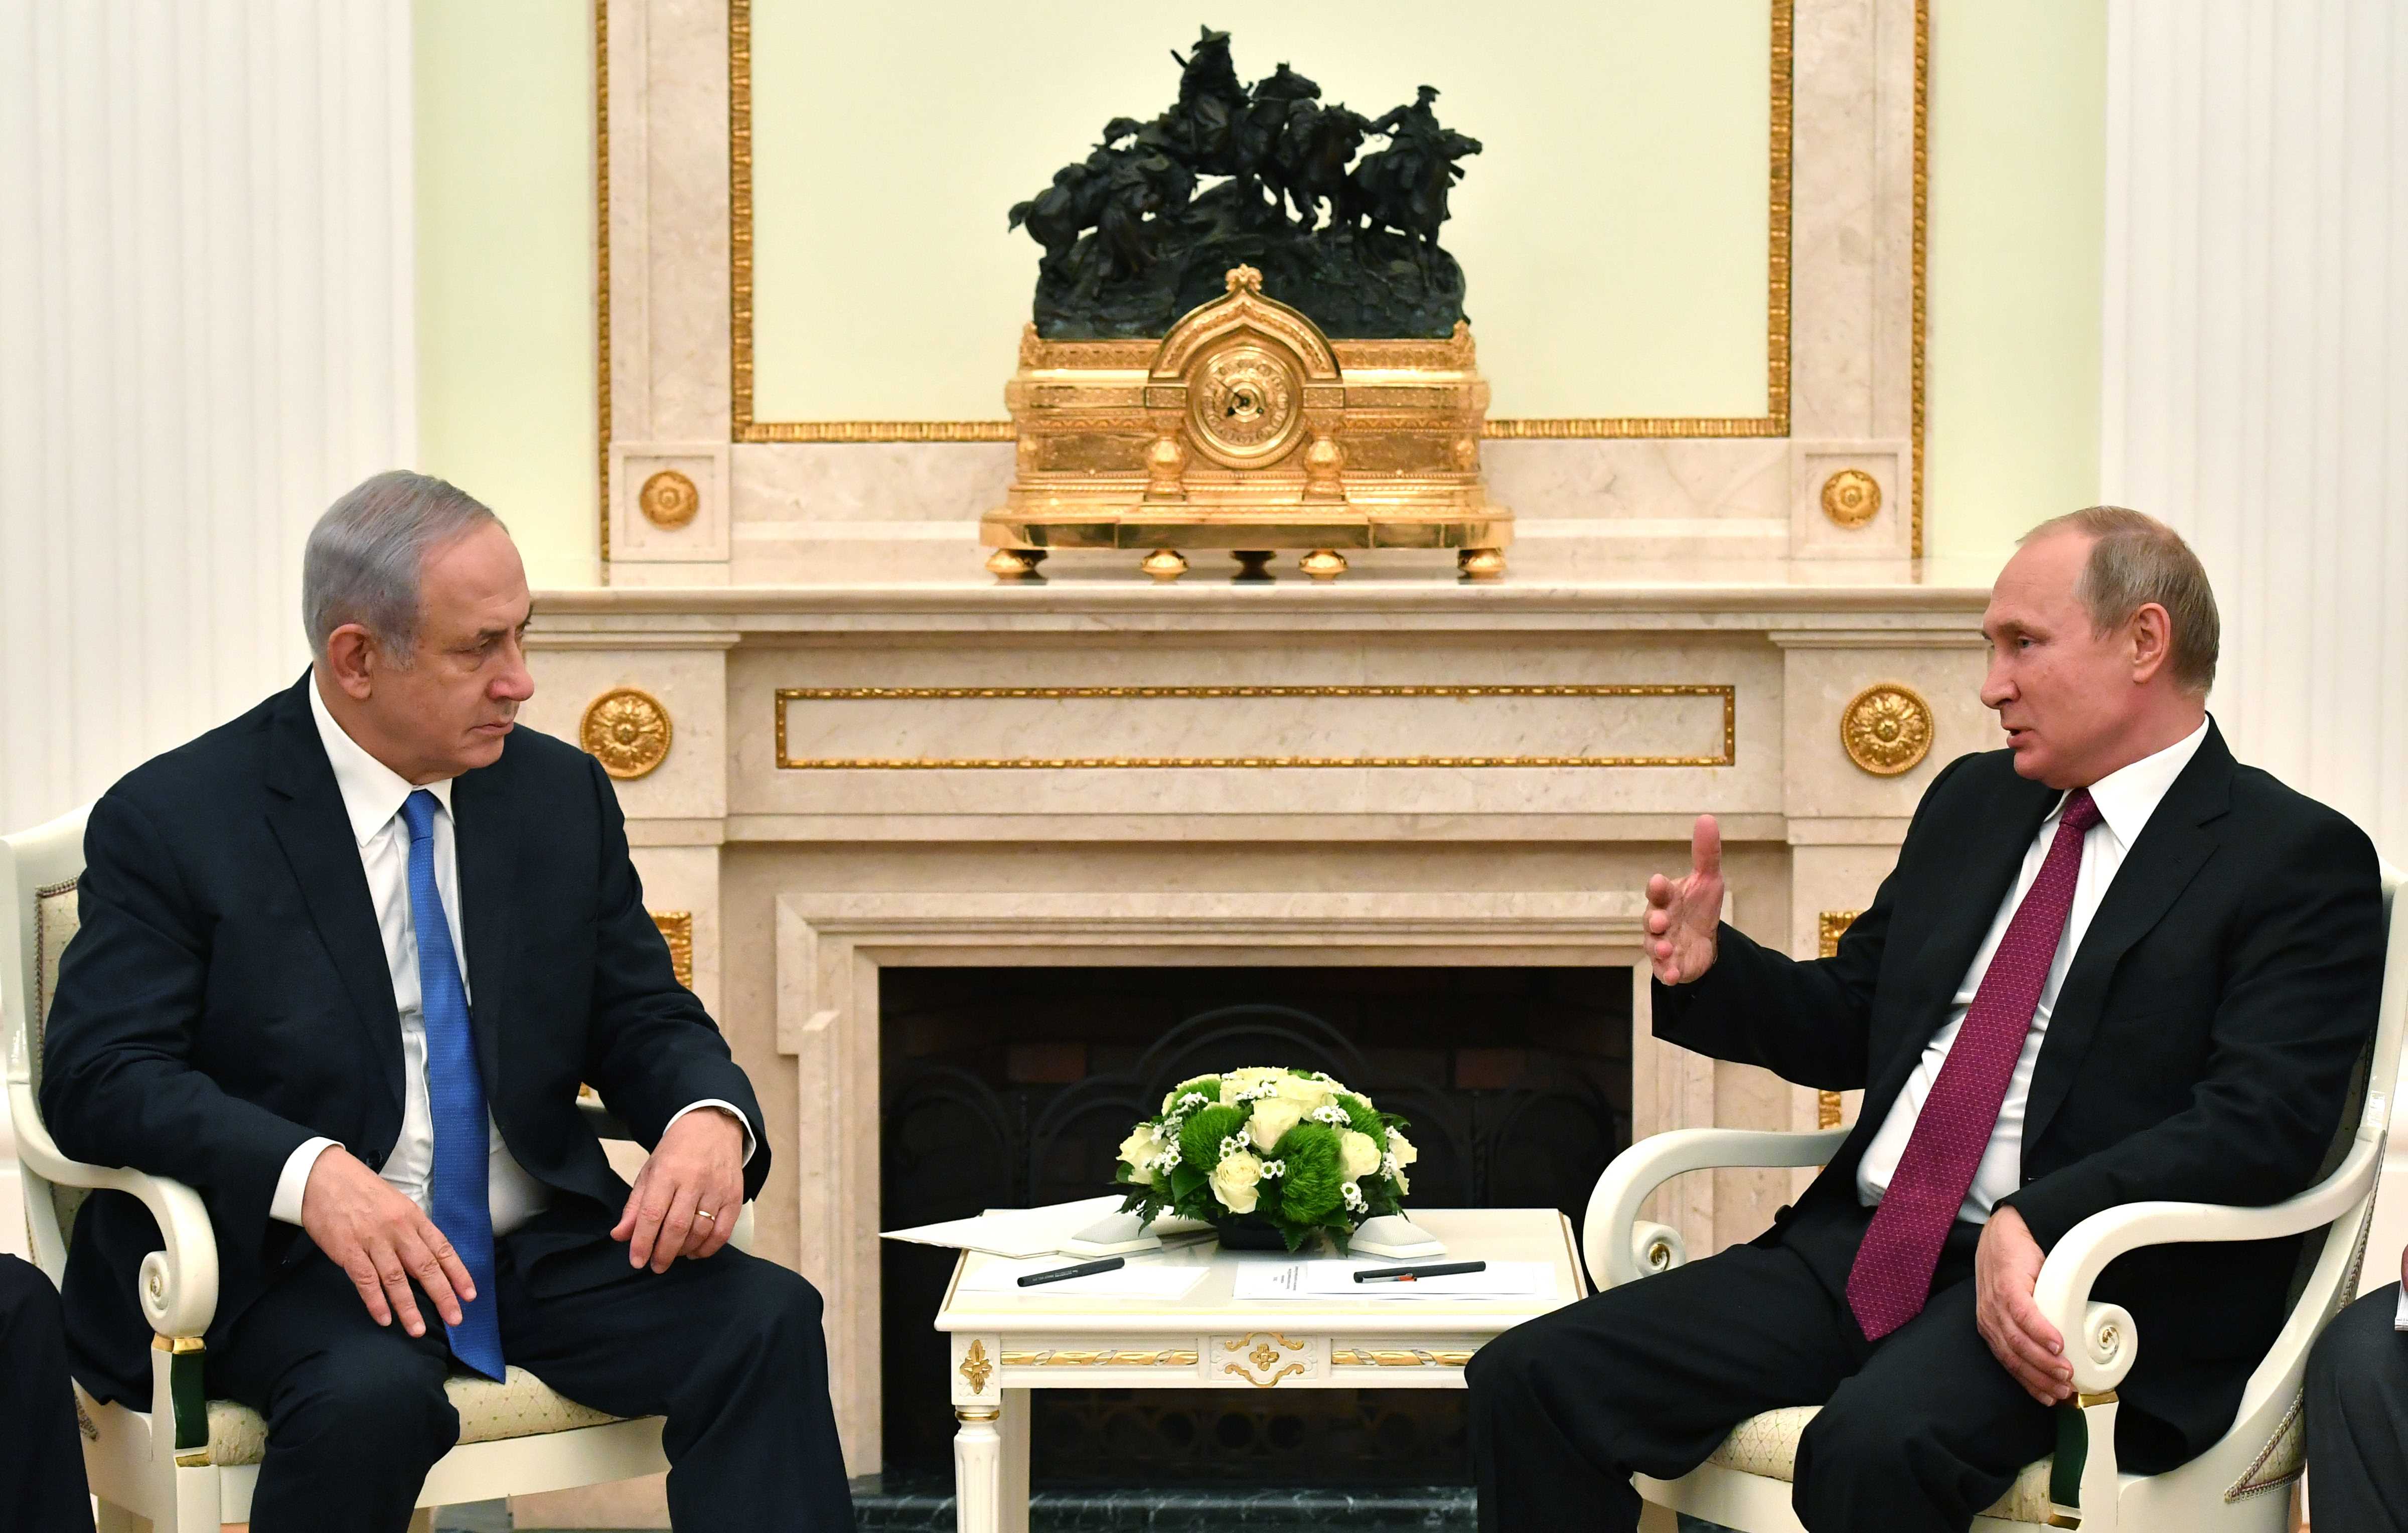 الرئيس الروسي فلاديمير بوتين ورئيس الوزراء الاسرائيلي بنيامين نتنياهو في اجتماع في موسكو، 11 يوليو 2019. رويترز 